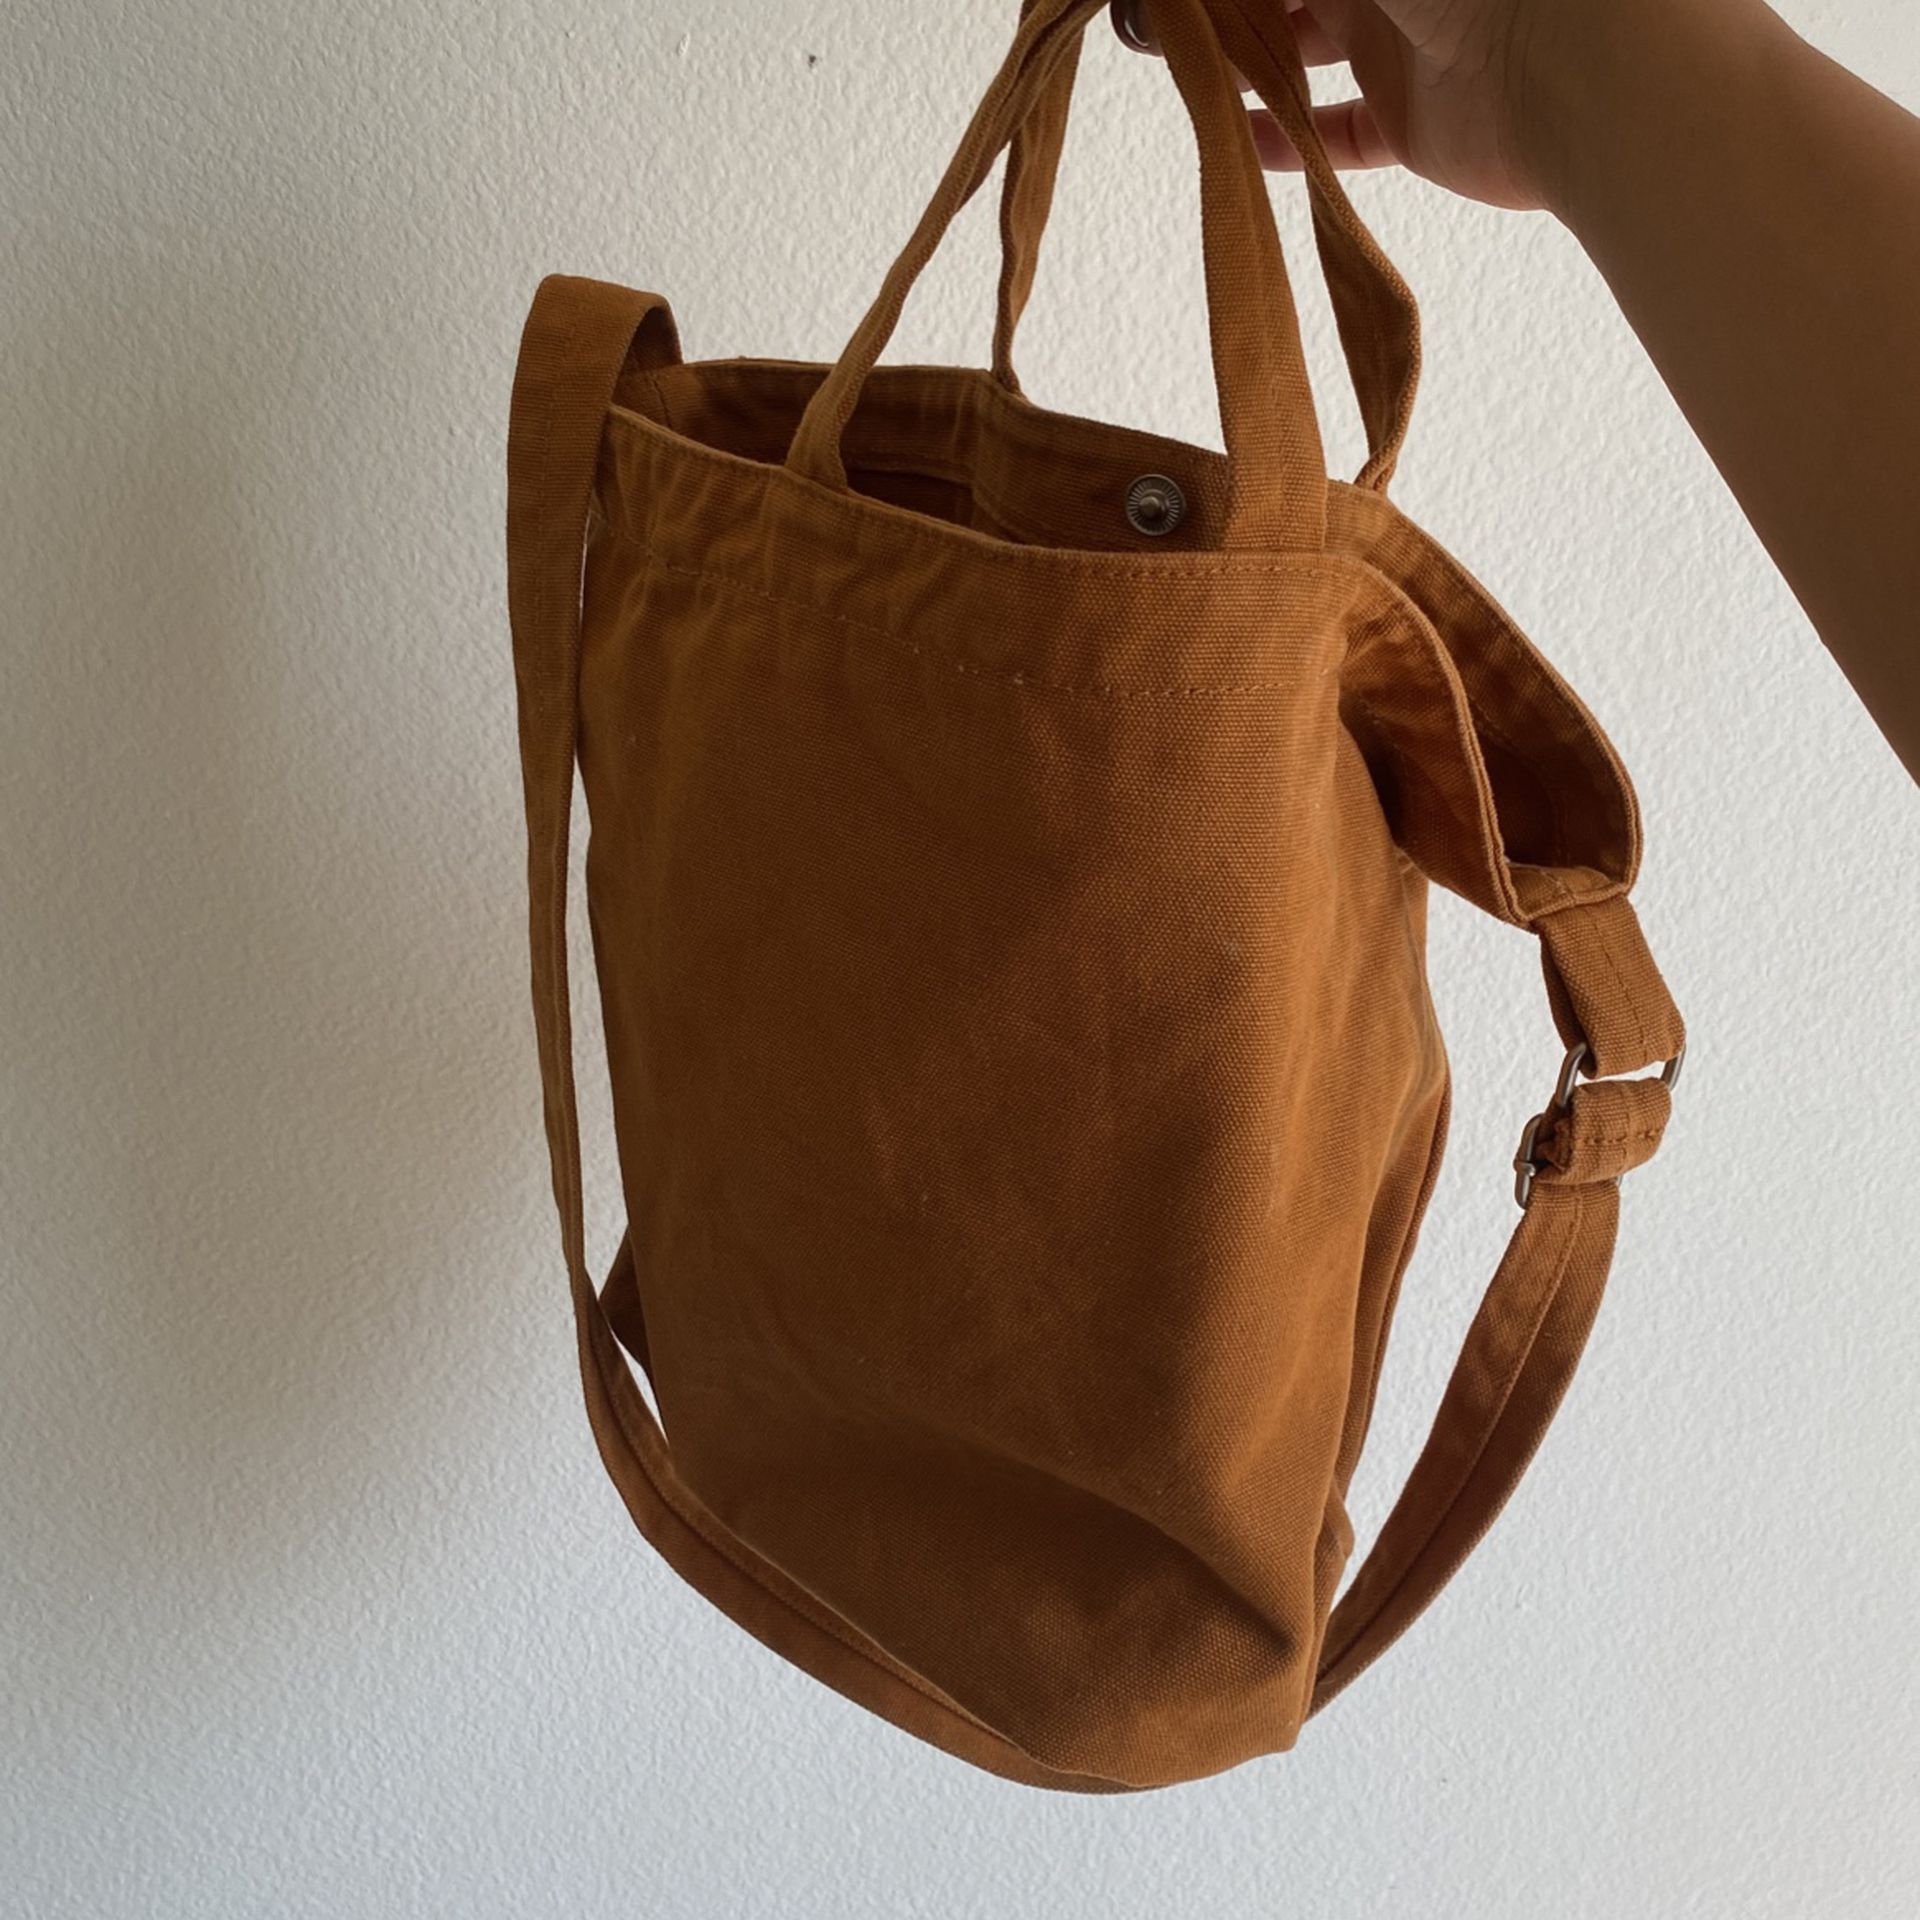 Baggu Bag for Sale in Los Angeles, CA - OfferUp